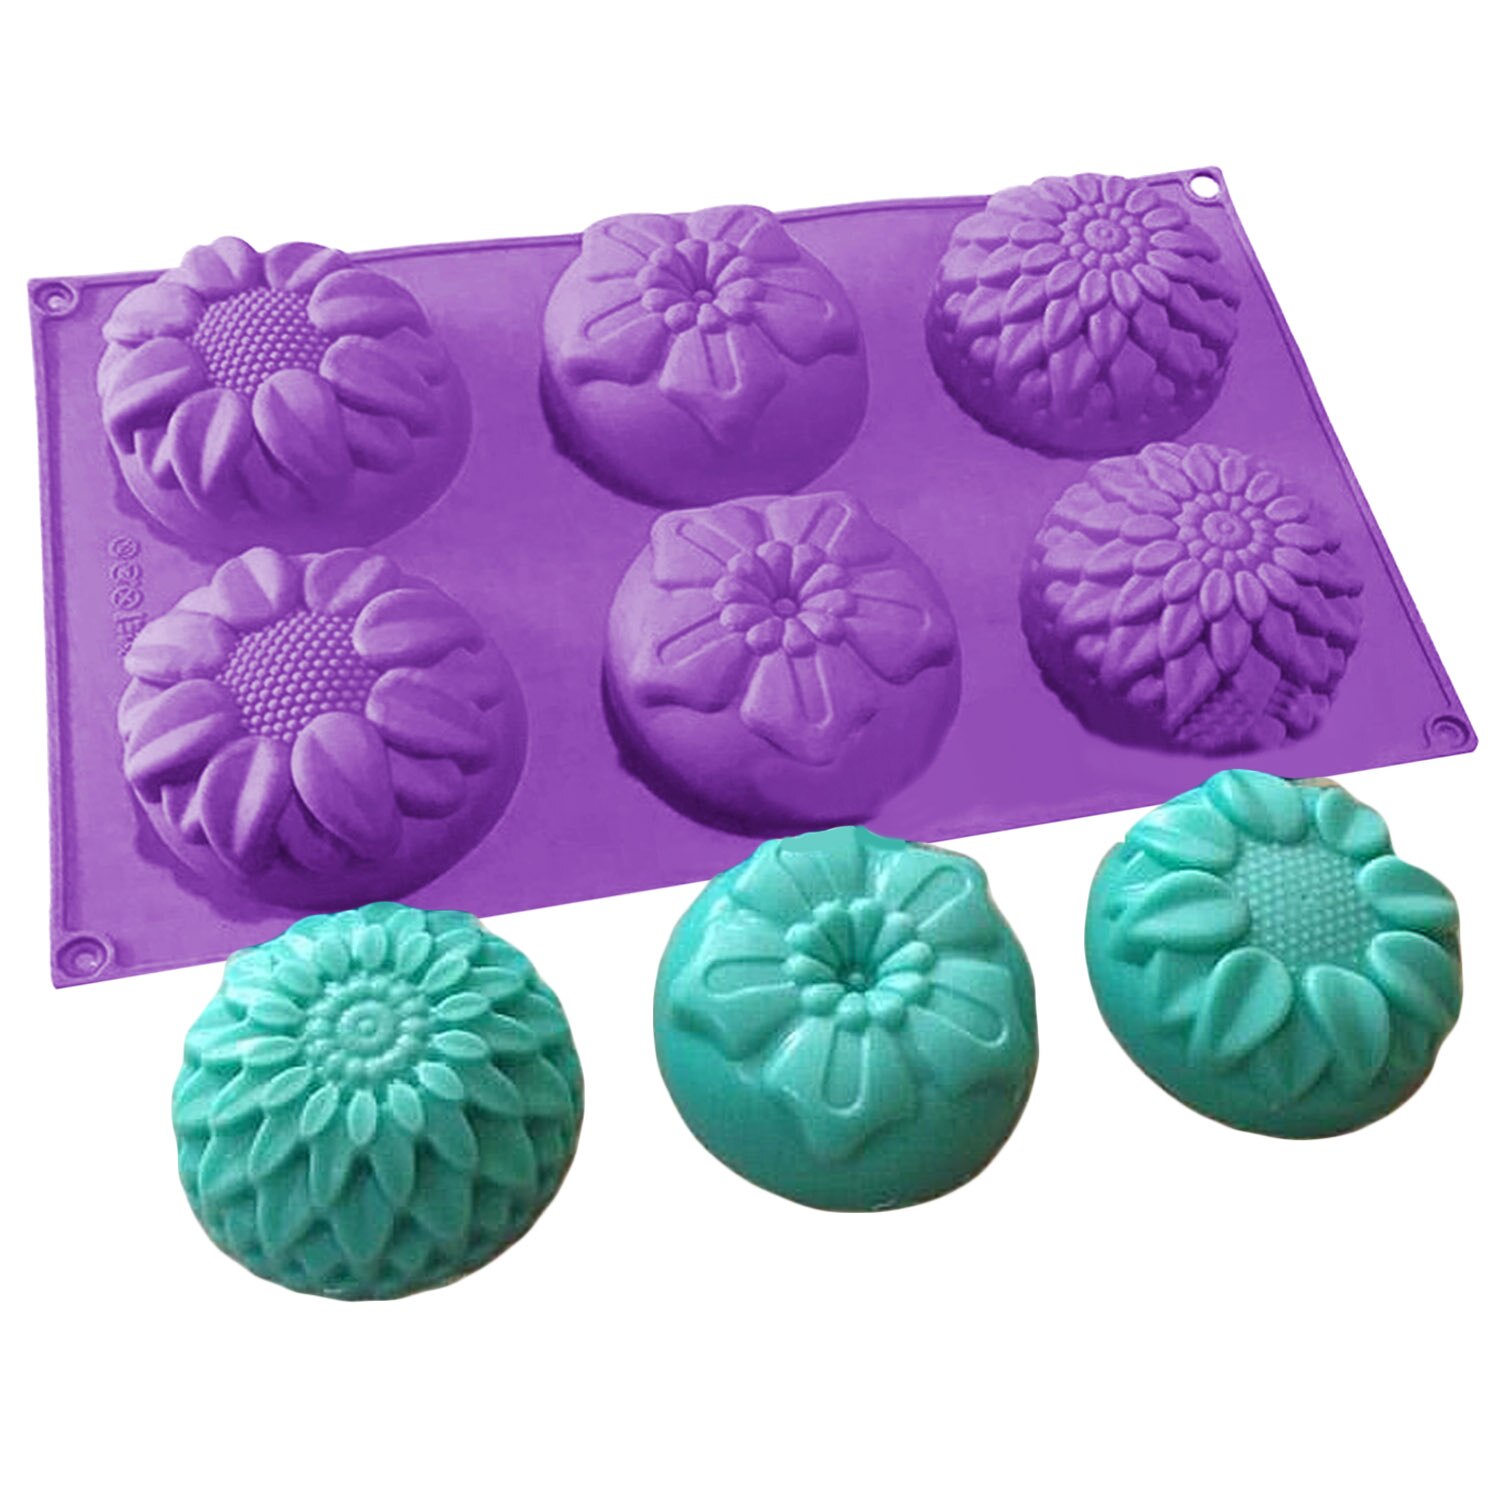 3D Siliconen Zeep mallen Bloem Handgemaakte Zepen Maken DIY Mould cake Gumpaste confeitaria Candy cookies Fondant Mold Decoratie